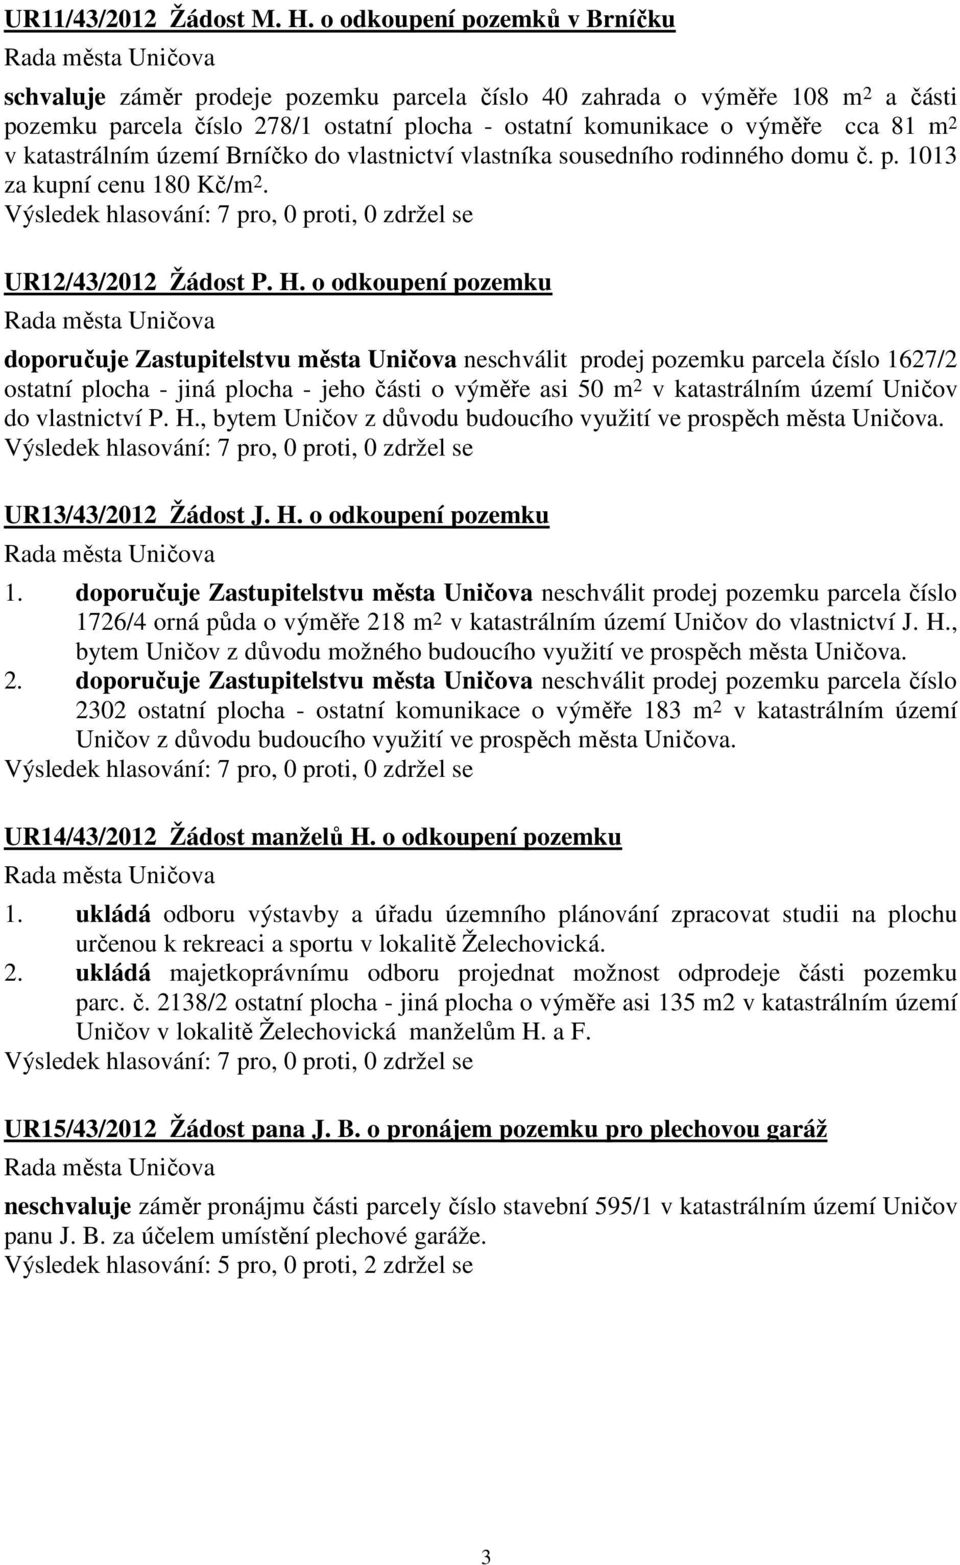 katastrálním území Brníčko do vlastnictví vlastníka sousedního rodinného domu č. p. 1013 za kupní cenu 180 Kč/m 2. UR12/43/2012 Žádost P. H.